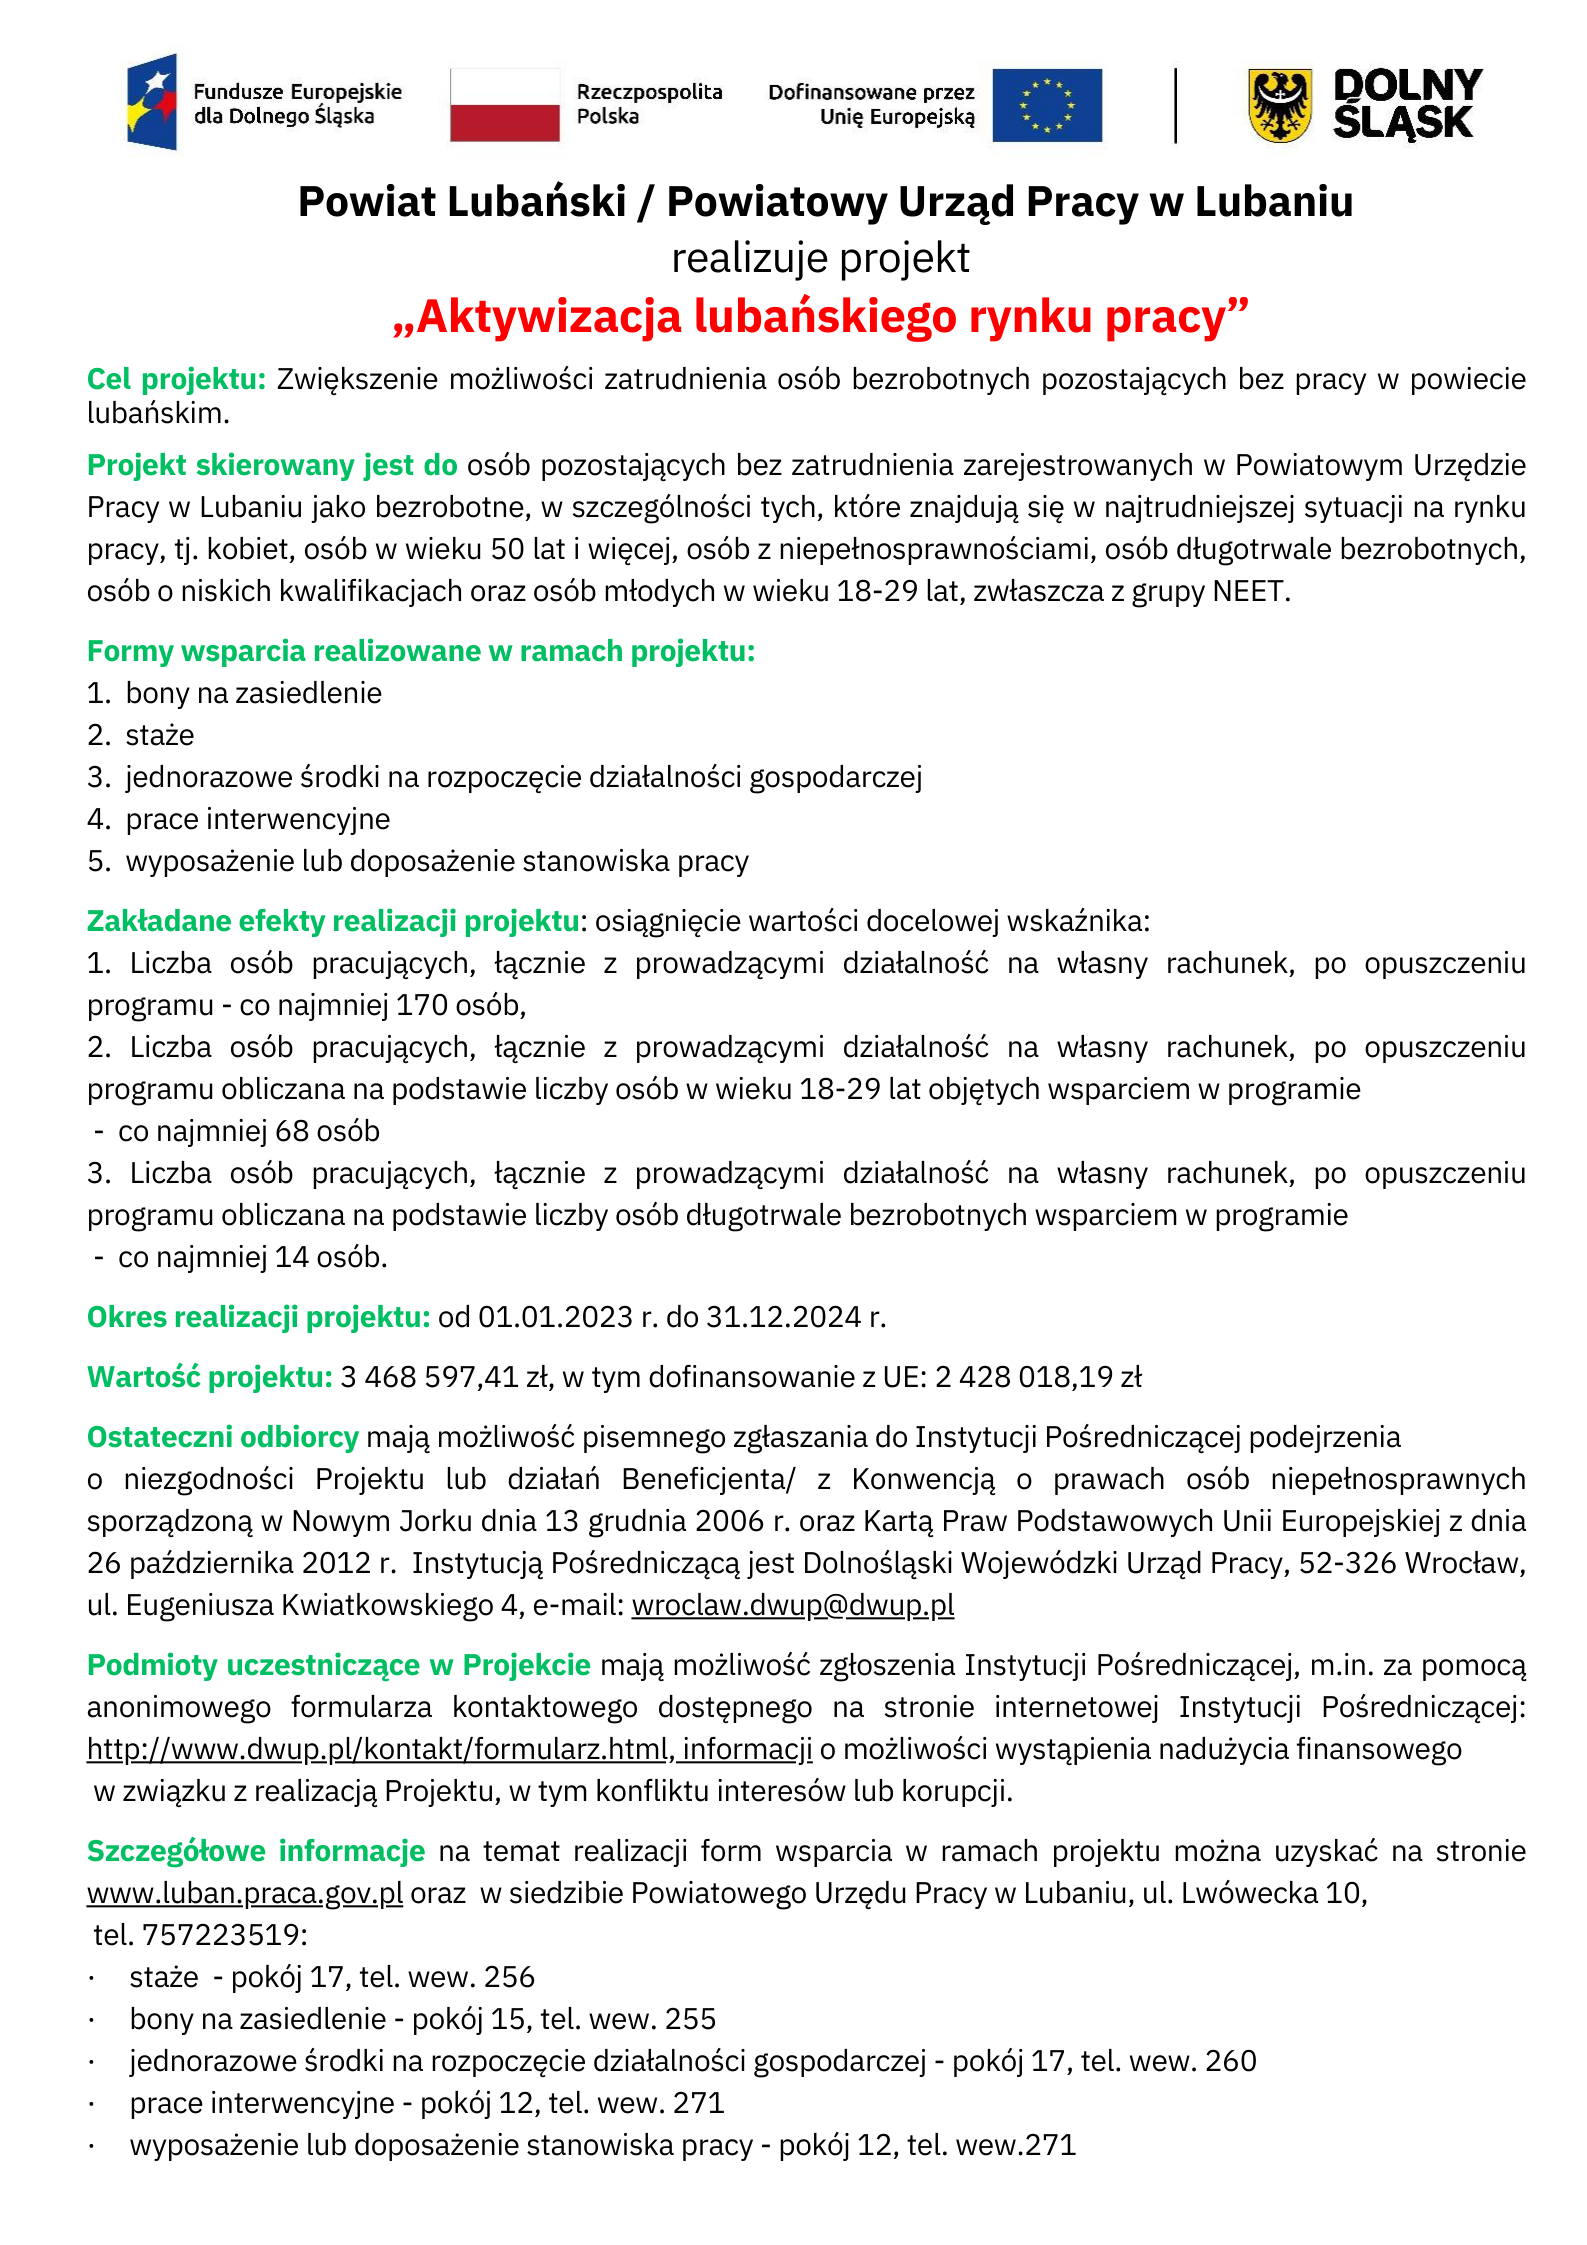 slider.alt.head Informacja o realizowanym projekcie: Aktywizacja lubańskiego rynku pracy